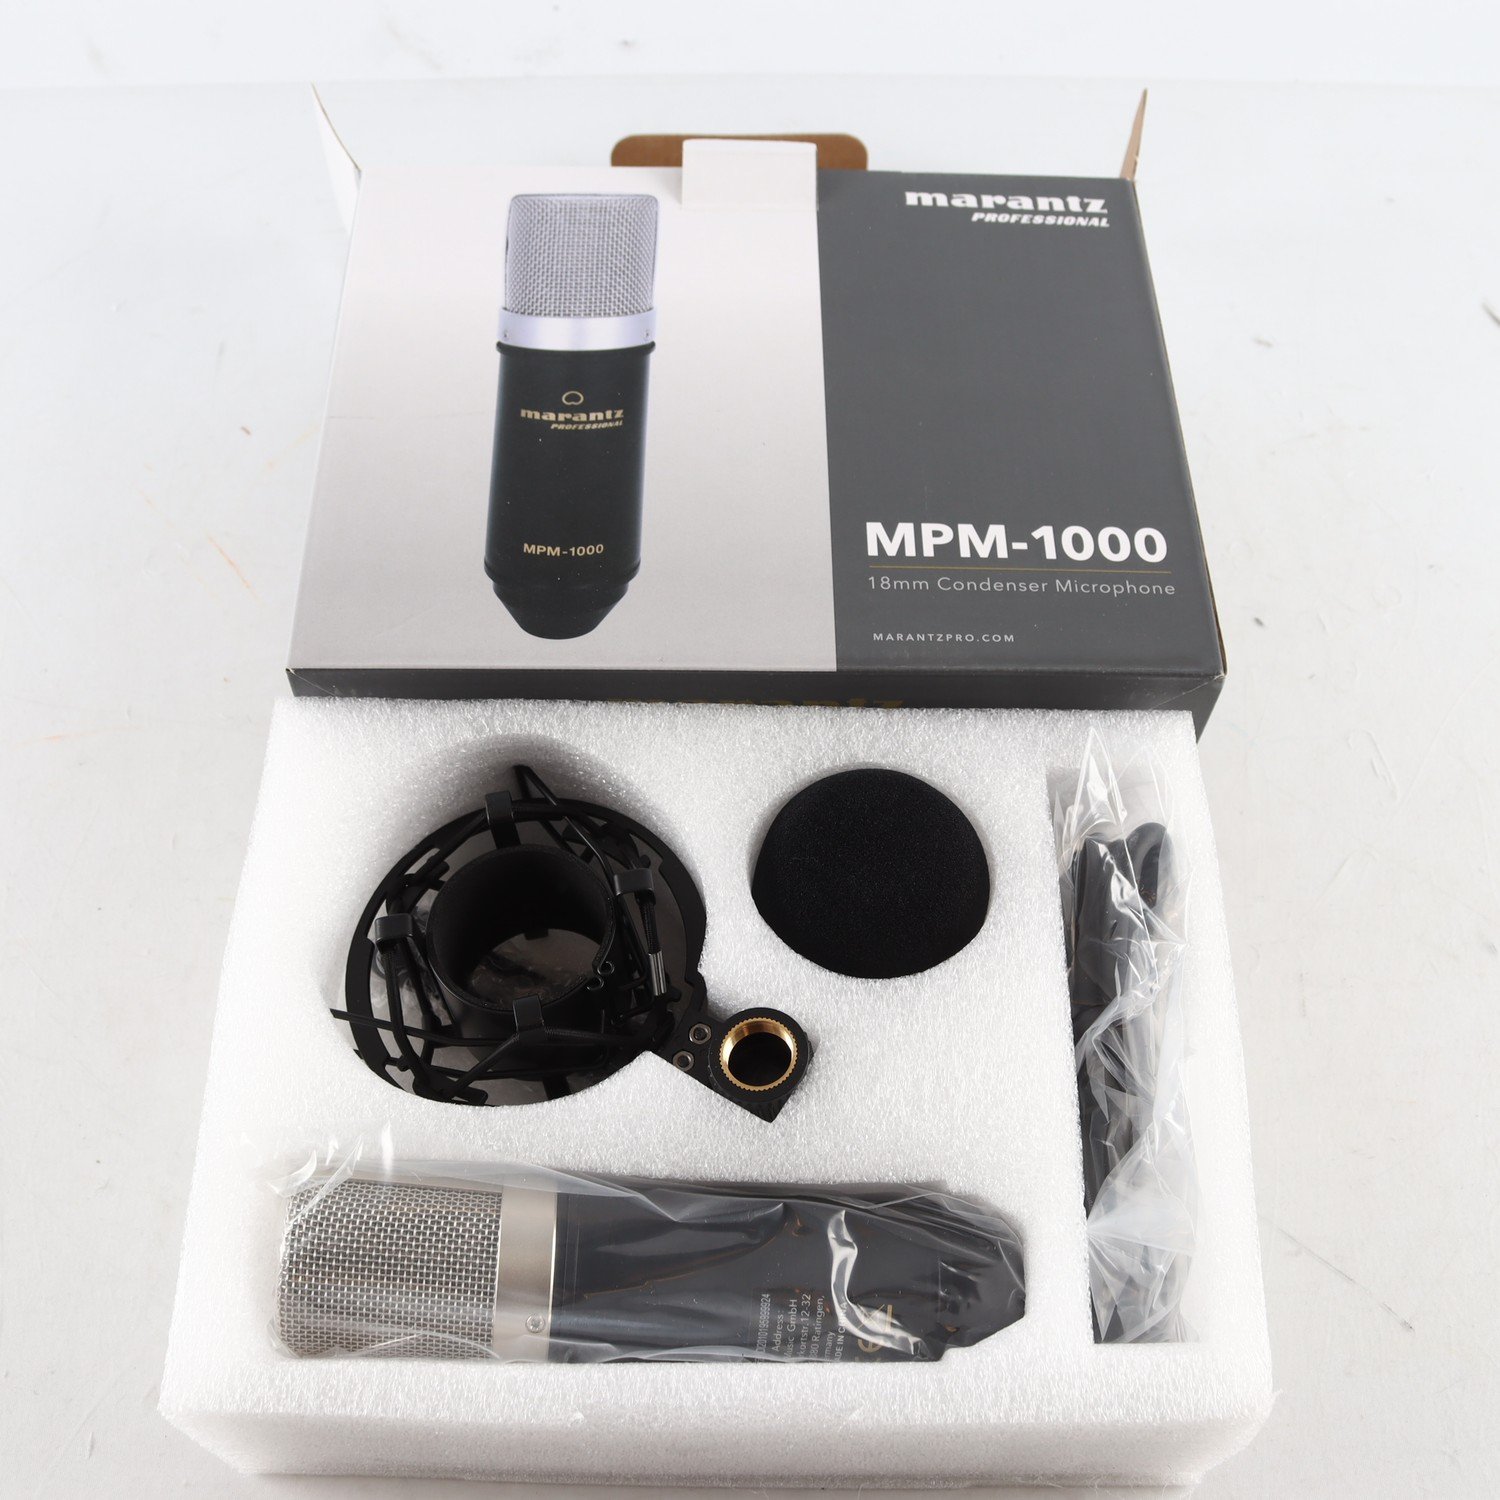 Mikrofon, Marantz MPM-1000, med tillbehör.